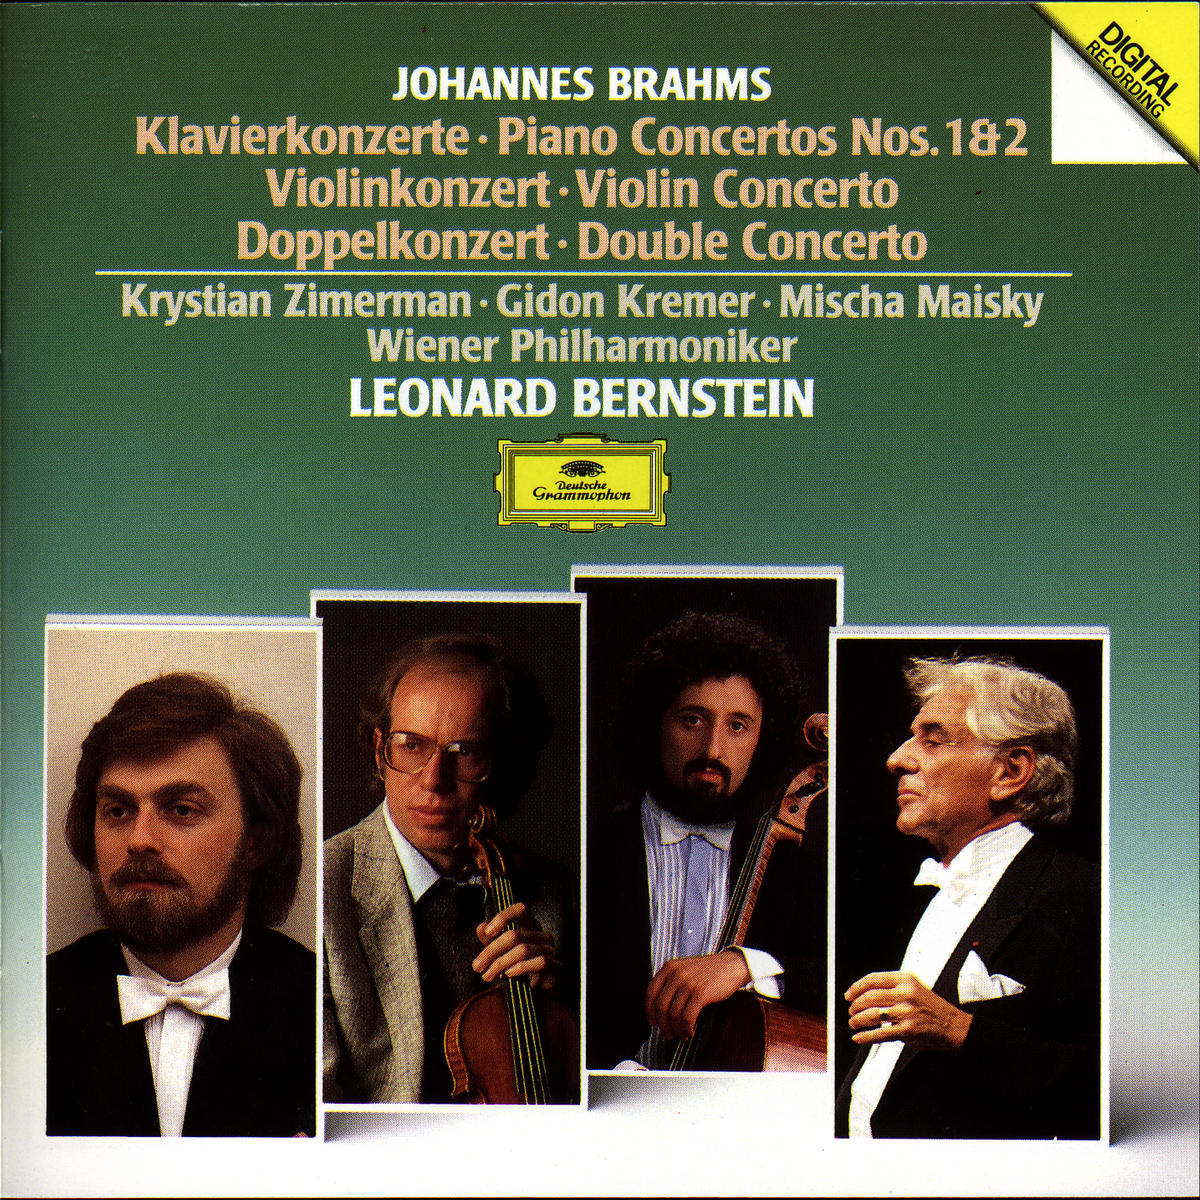 Produktfamilie BRAHMS Konzerte Bernstein